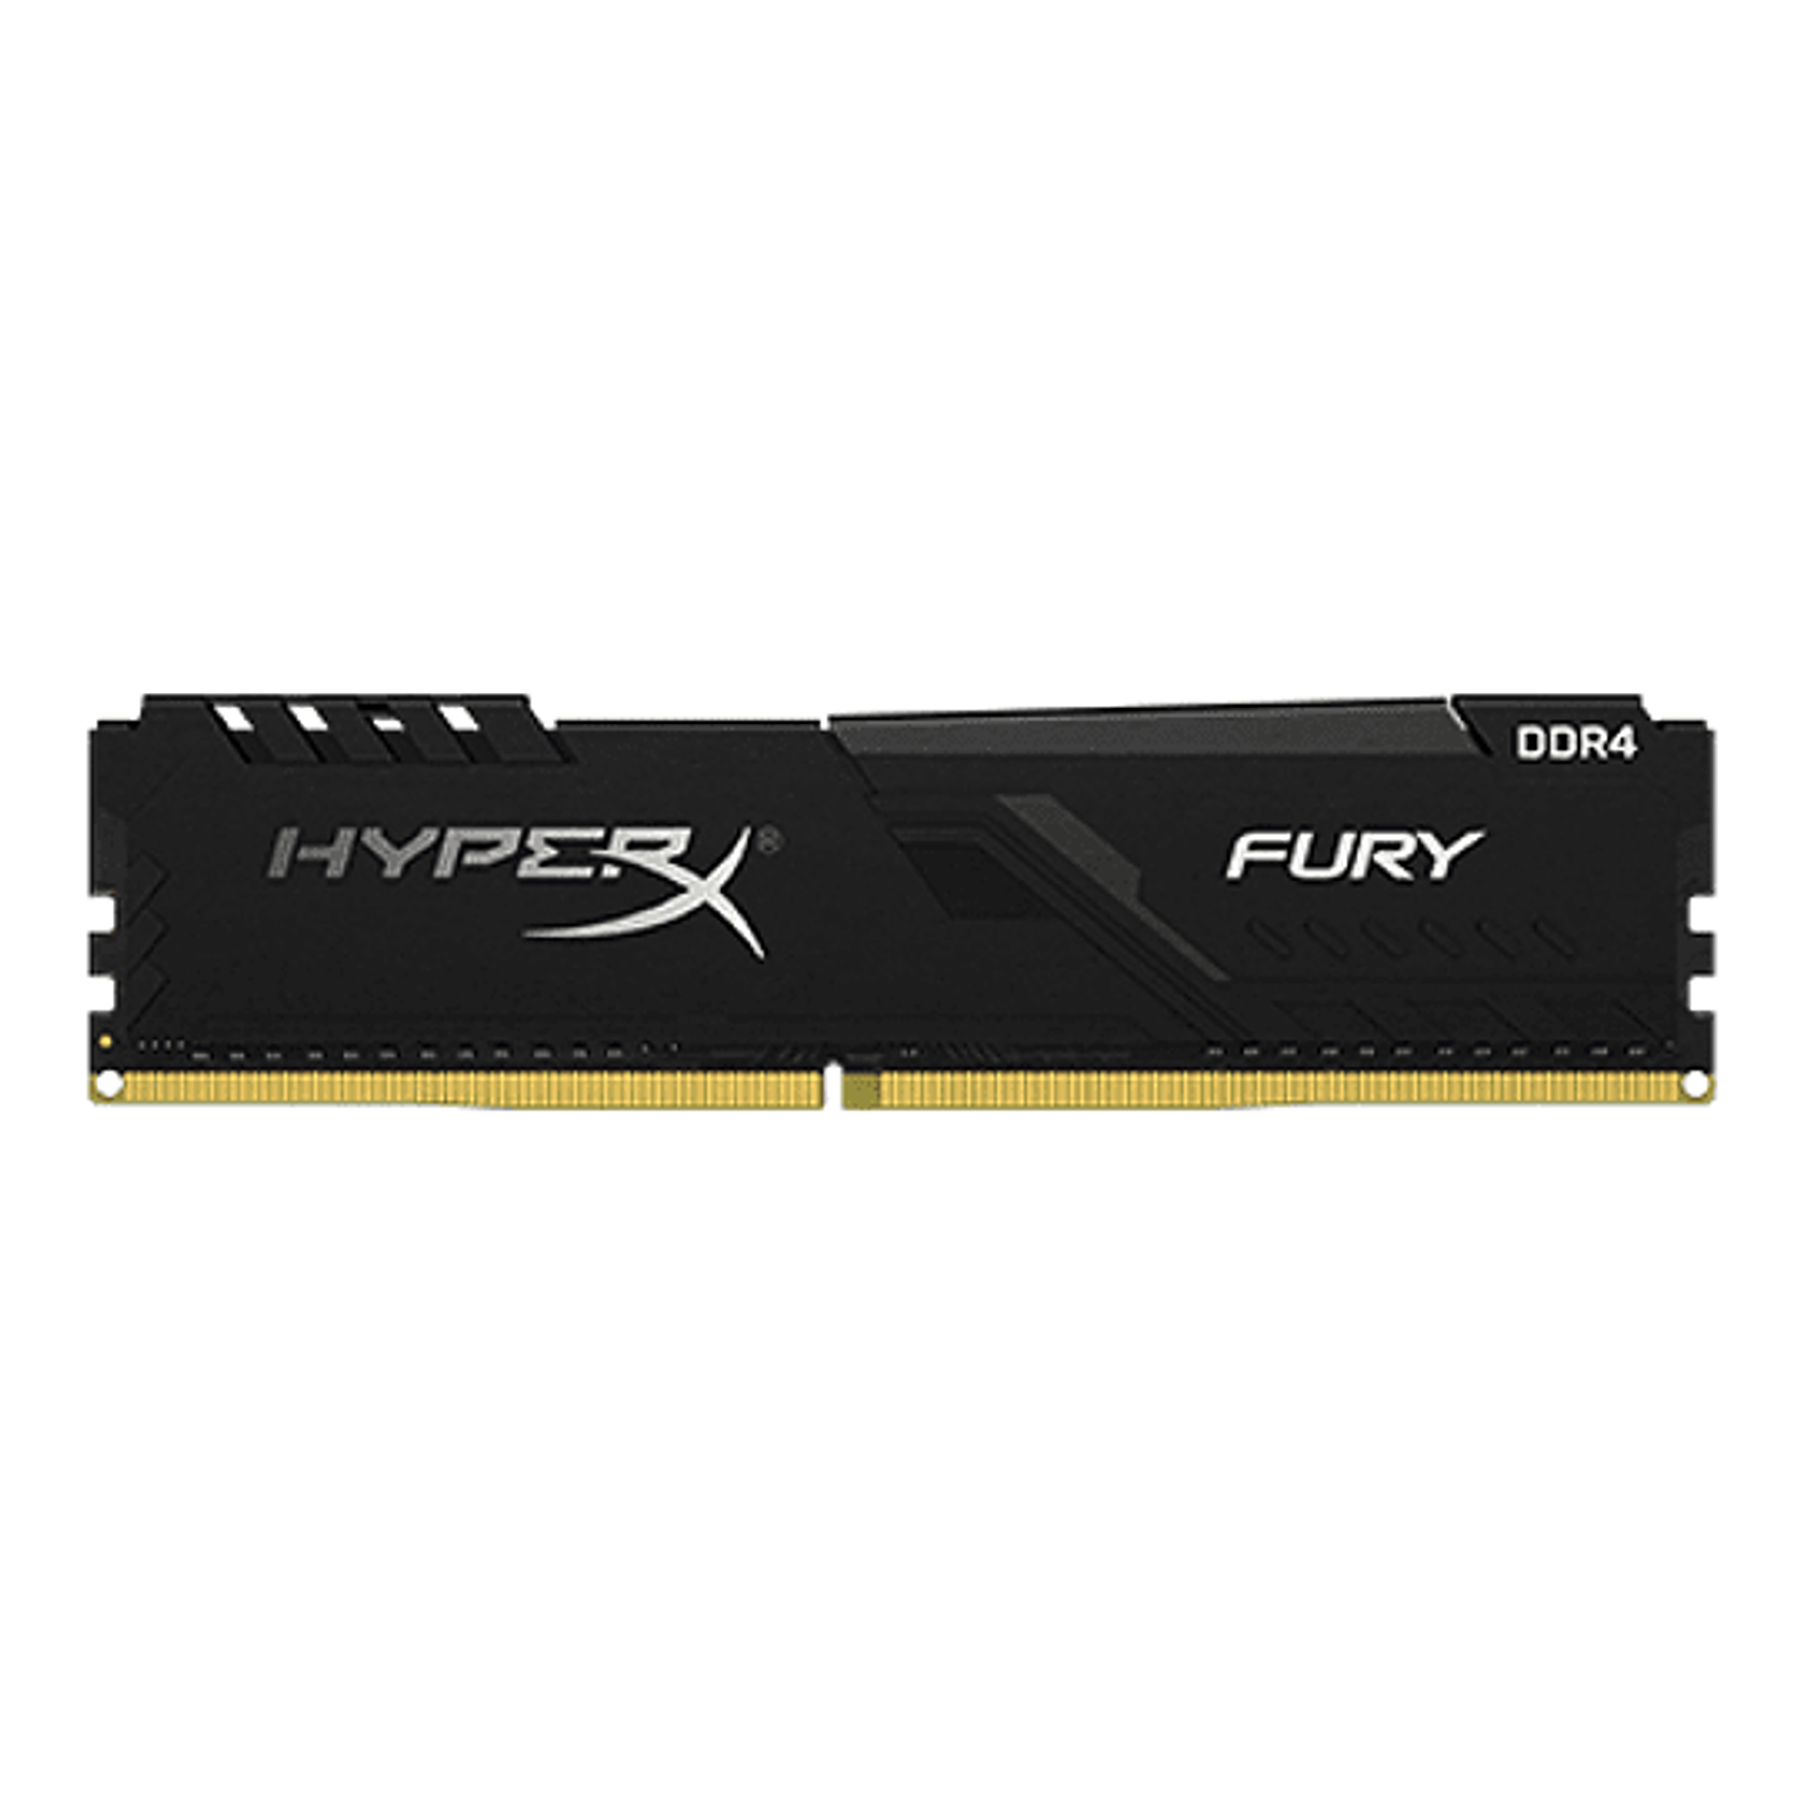 HyperX RAM 8GB 3466MHz DDR4 DIMM FURY BLACK